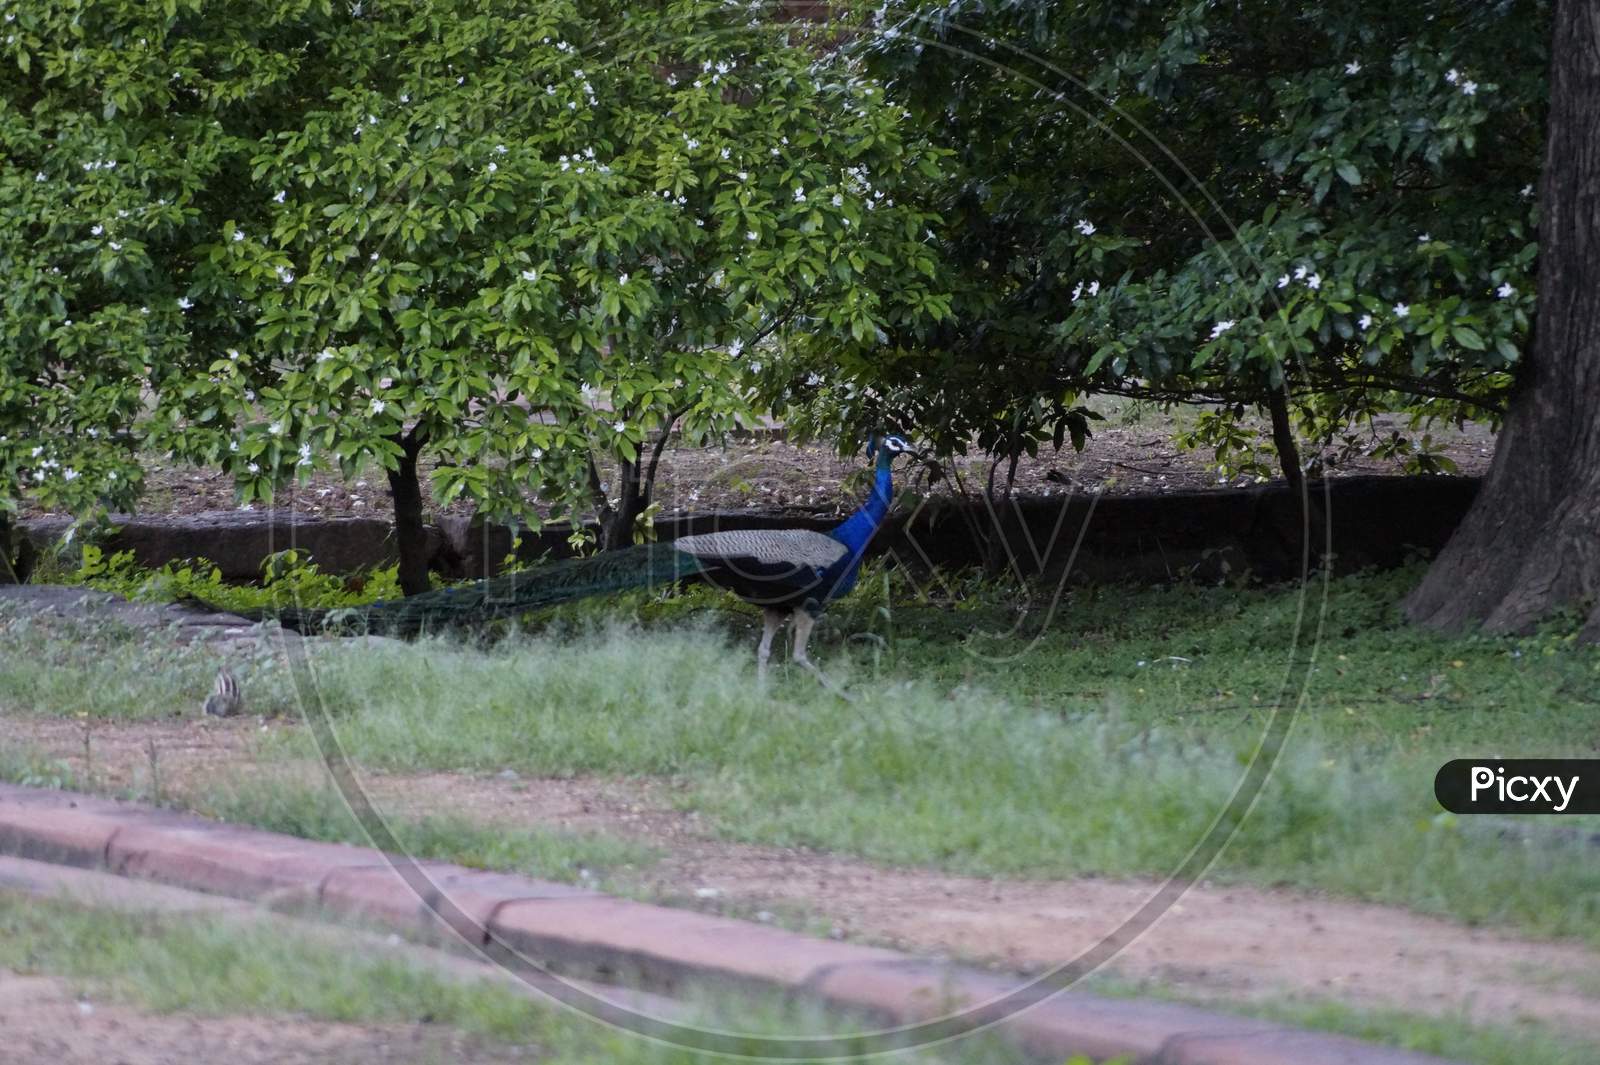 A peacock roaming freely in a garden.